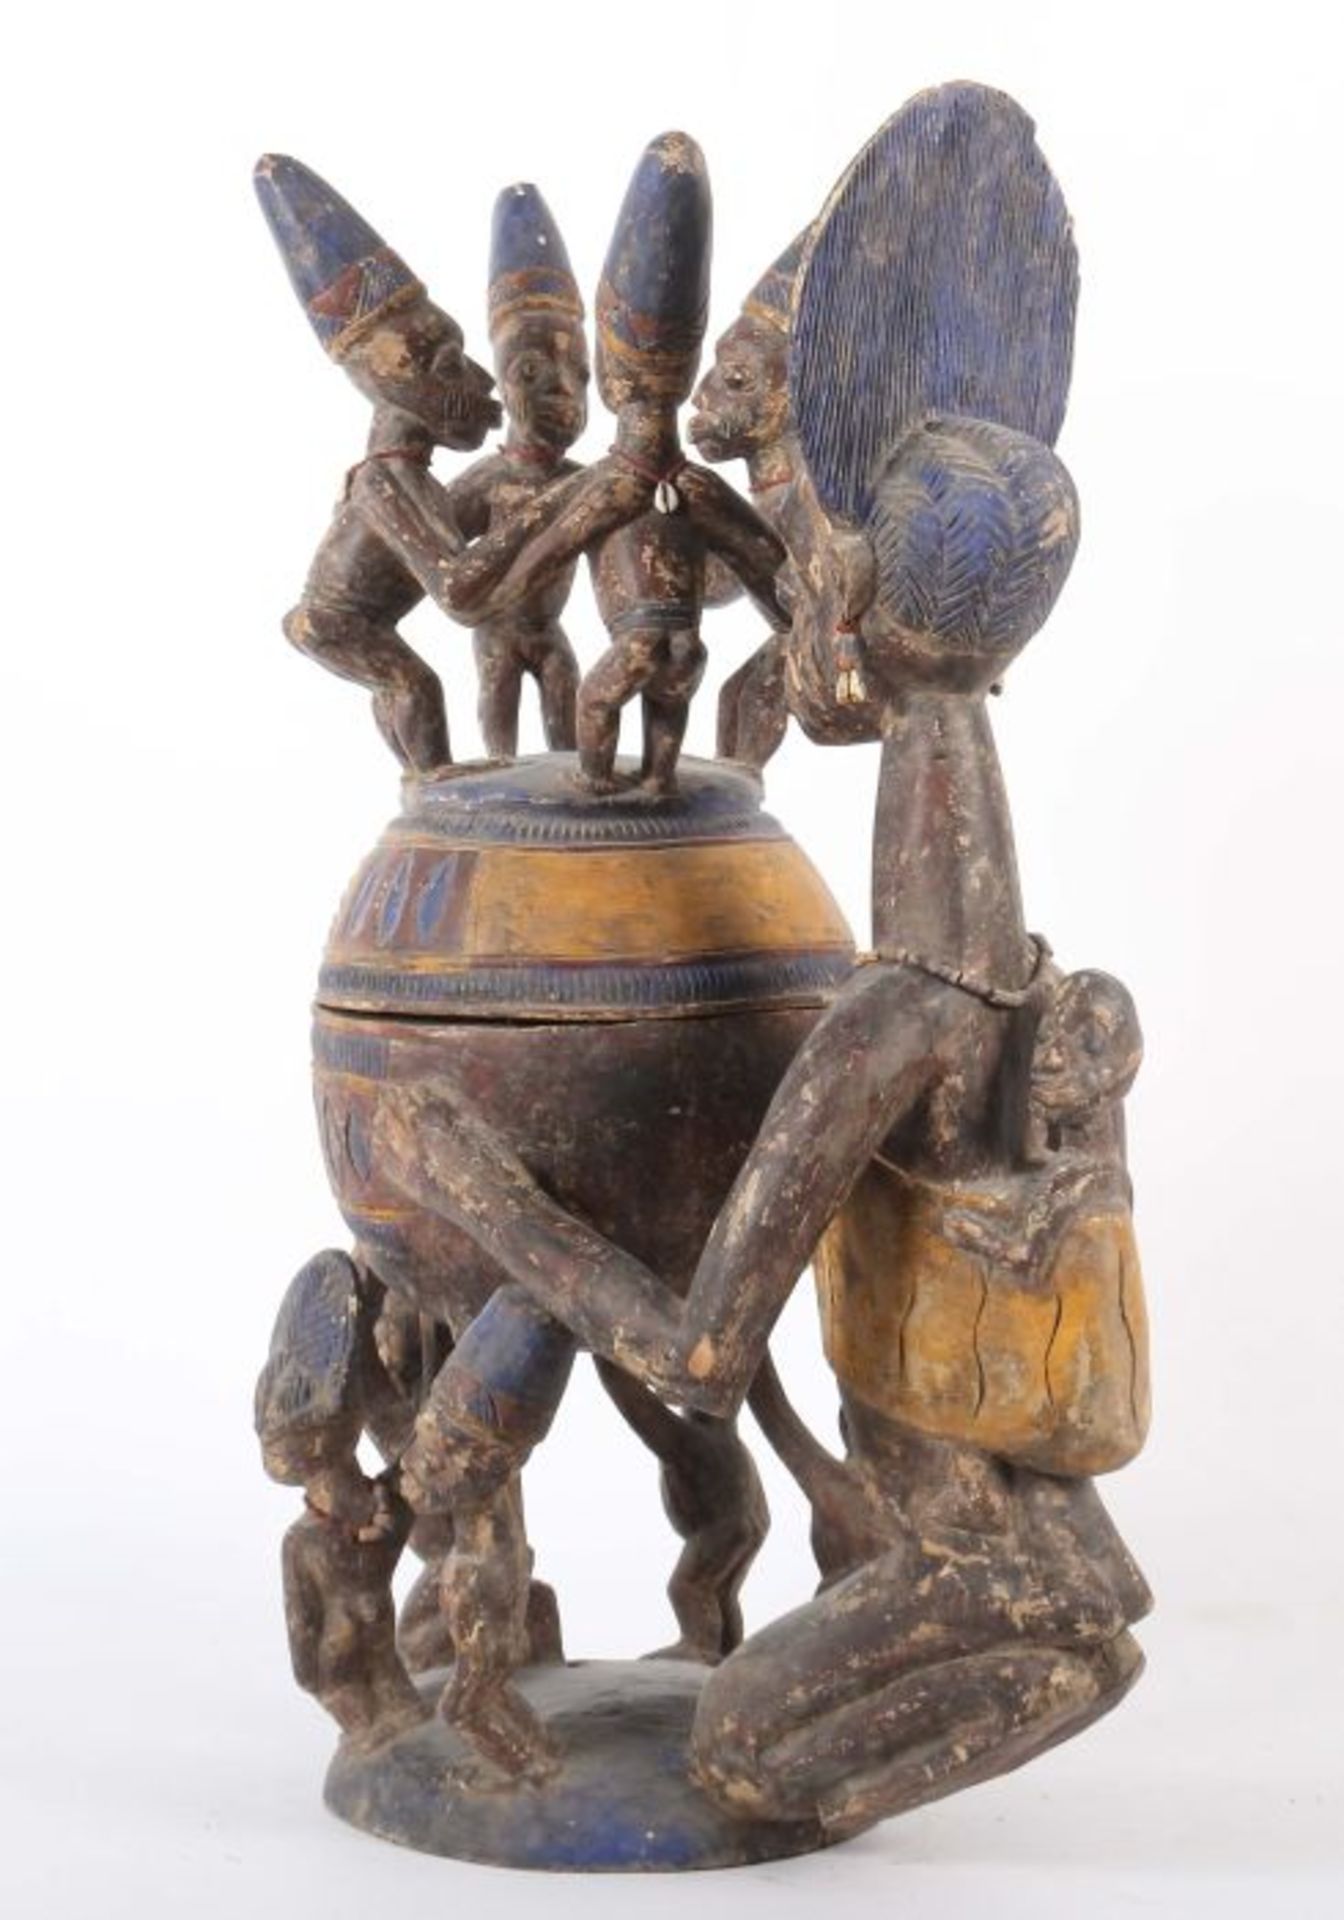 Großes Olumeye-GefäßNigeria, Stamm der Yoruba, 5 Trägerfiguren und 1 große Mutterfigur mit Kind - Image 2 of 10